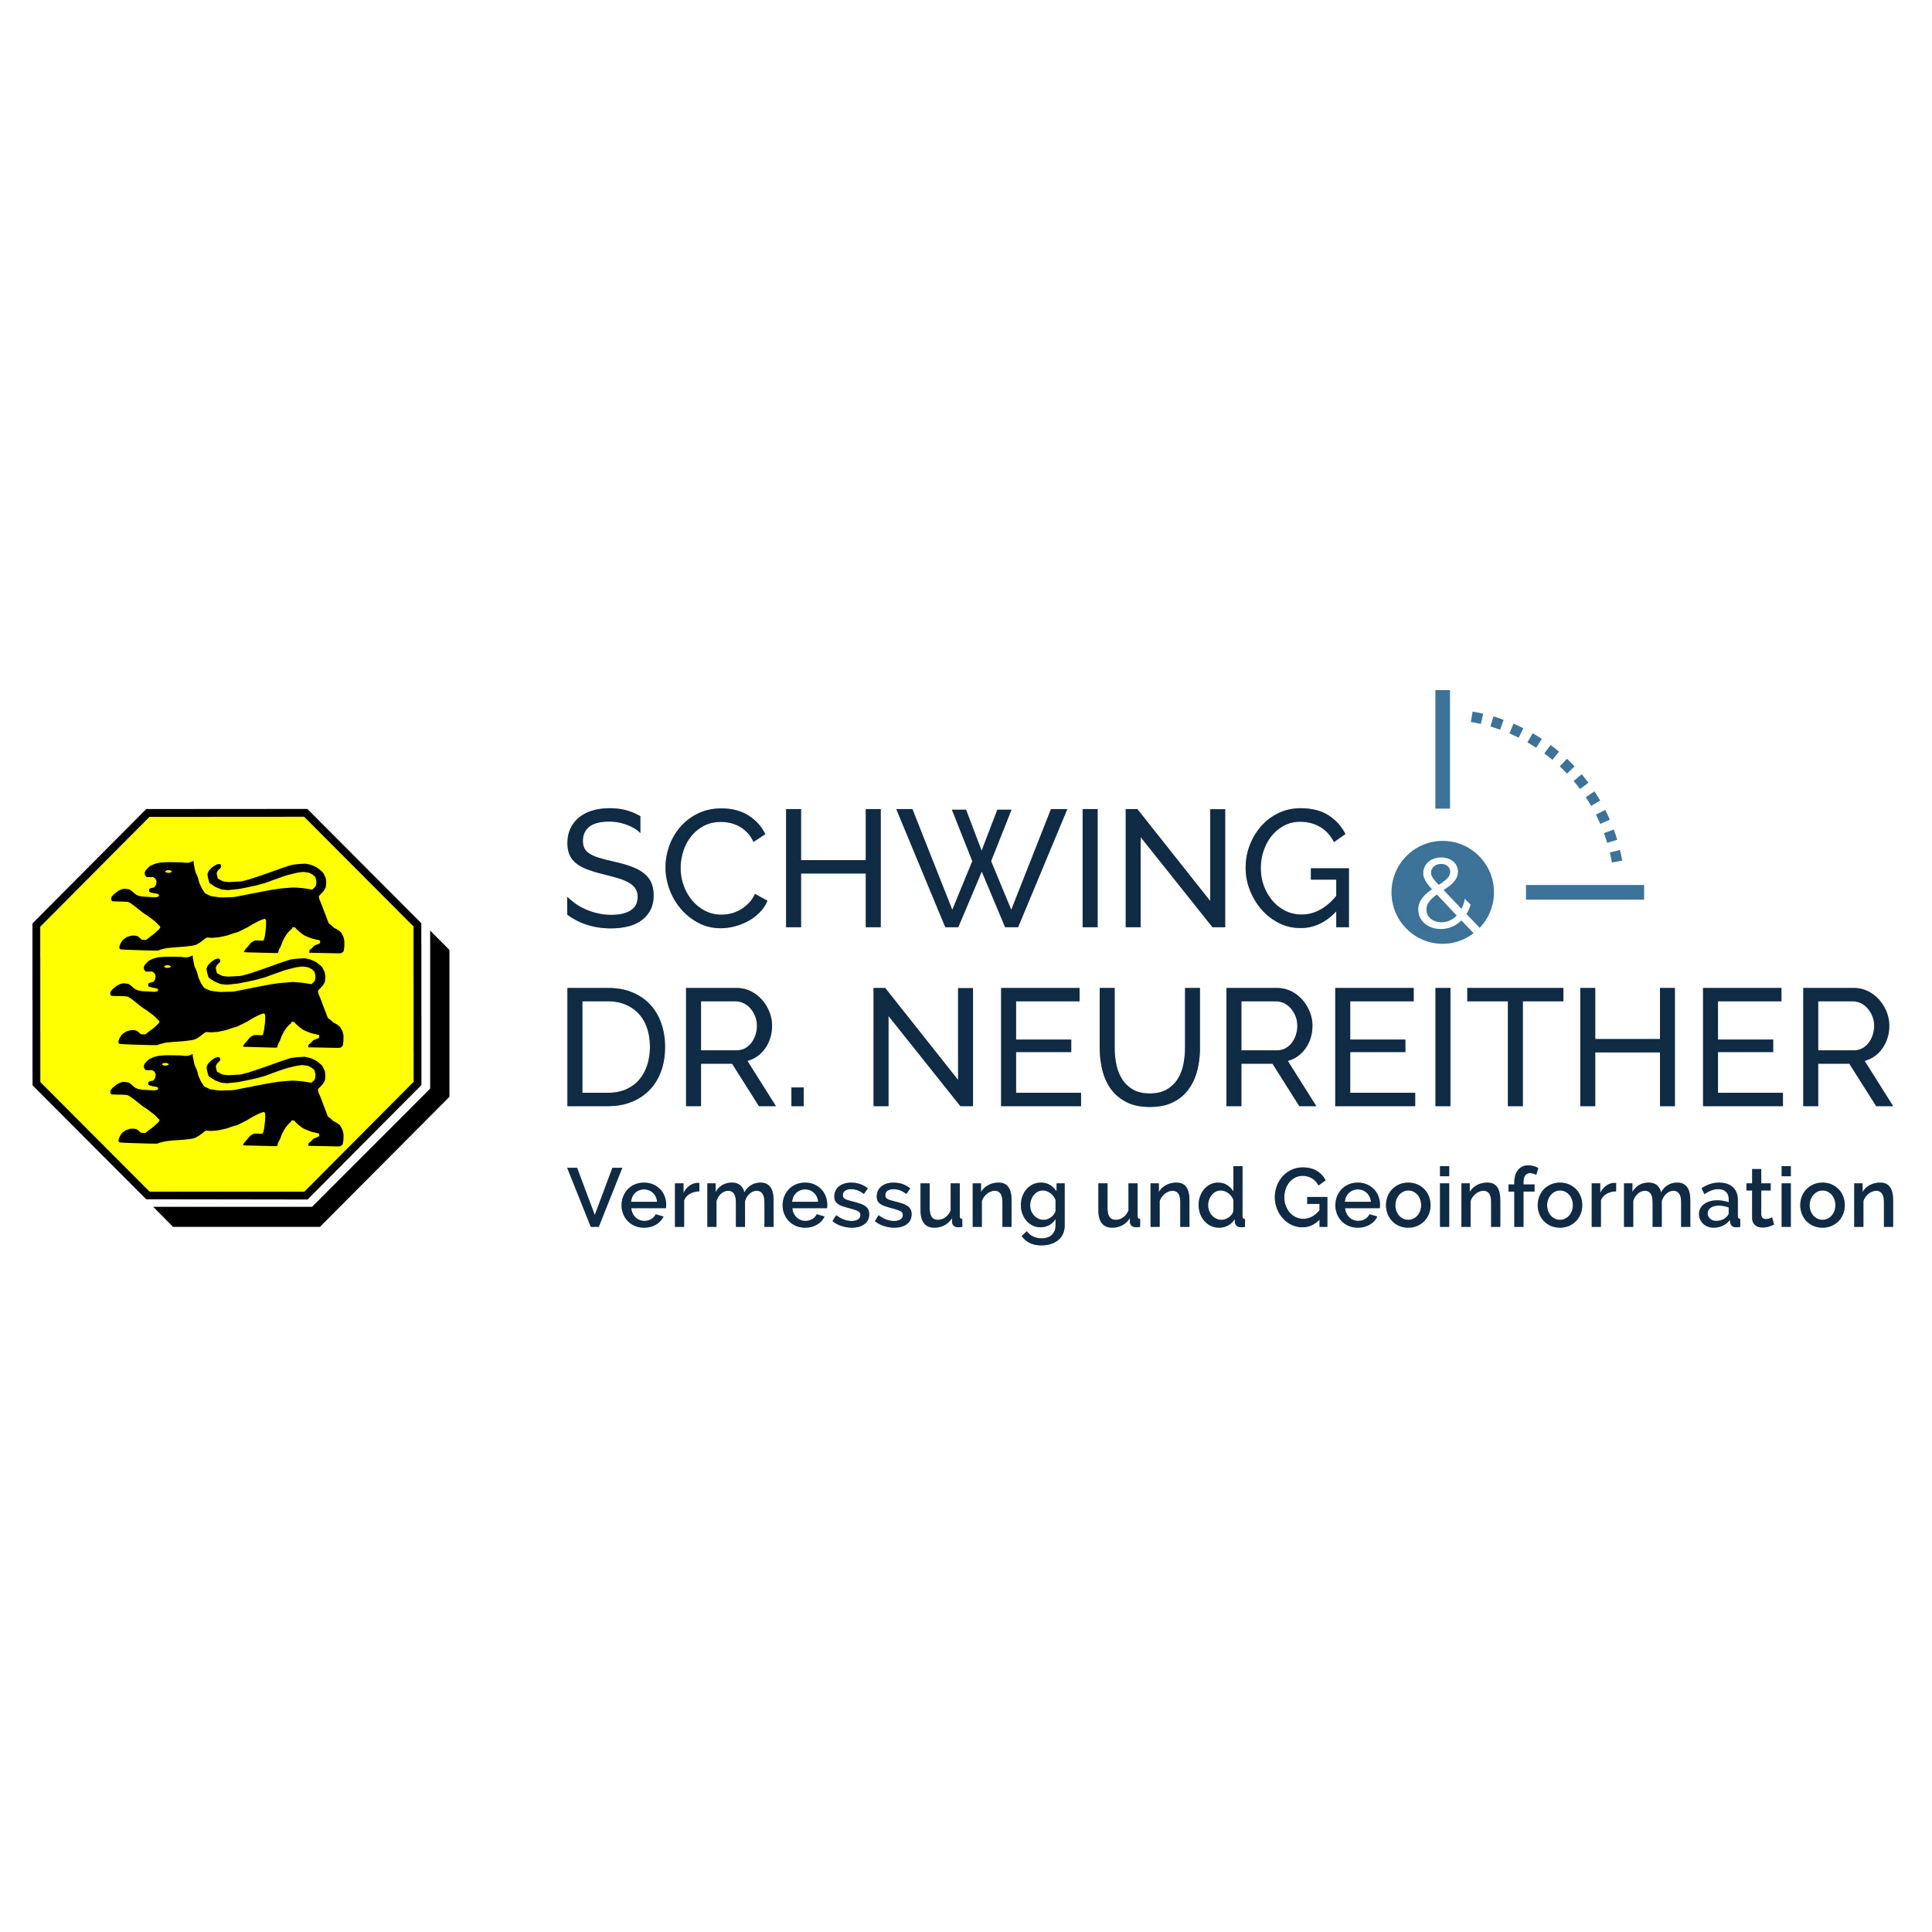 Vermessungsbüro Schwing & Dr. Neureither in Bad Friedrichshall - Logo